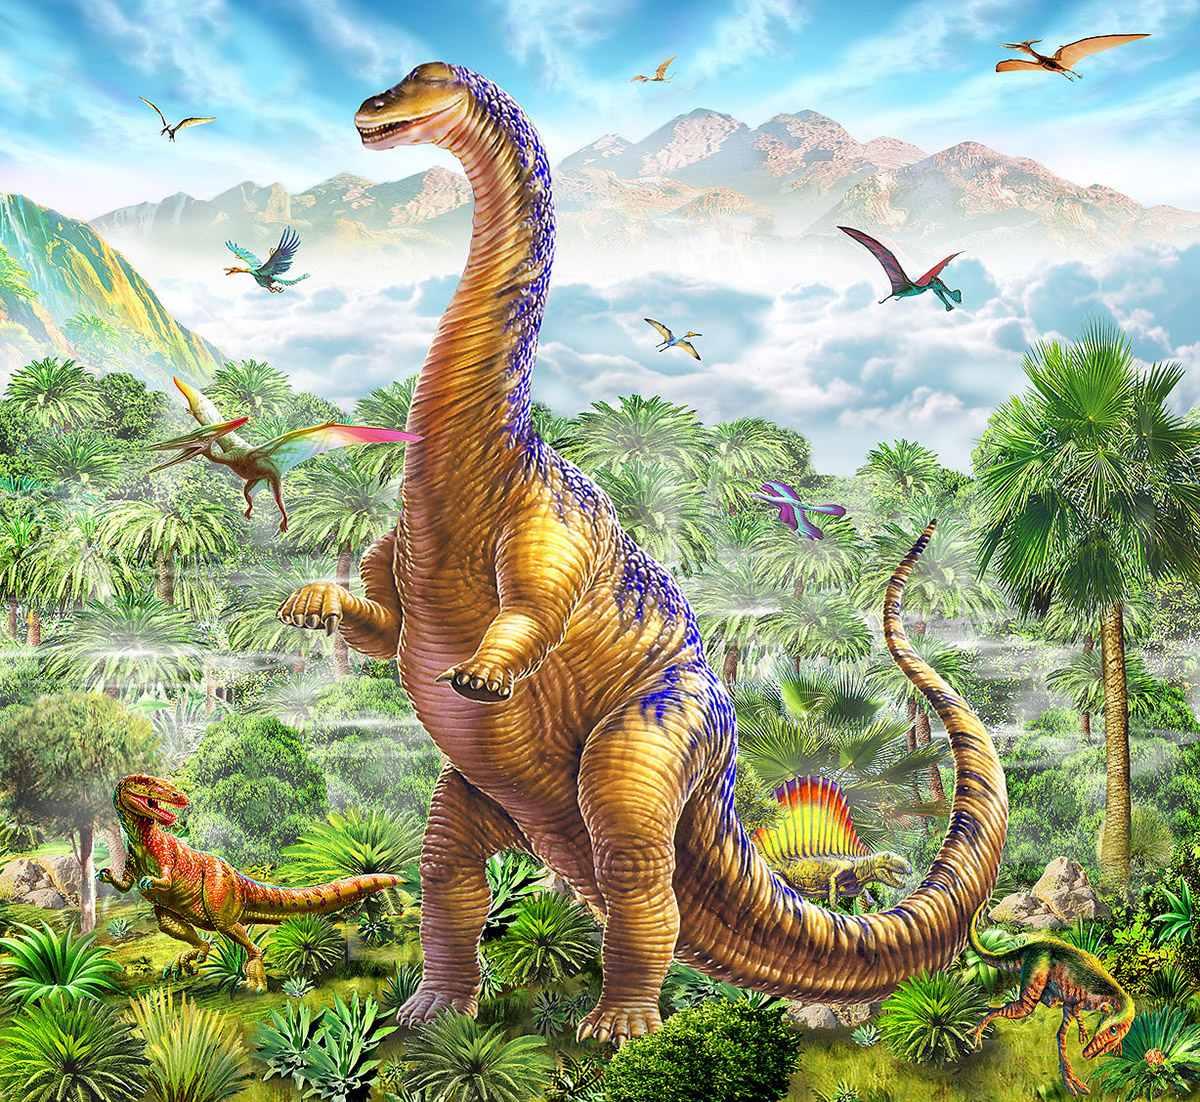 dinosaurs jurassic park tyranosaurus rex apatosaurus Braciosaurus pteranodon pteradactyl spinosaurus gigantosaurus jurassic Cretacious